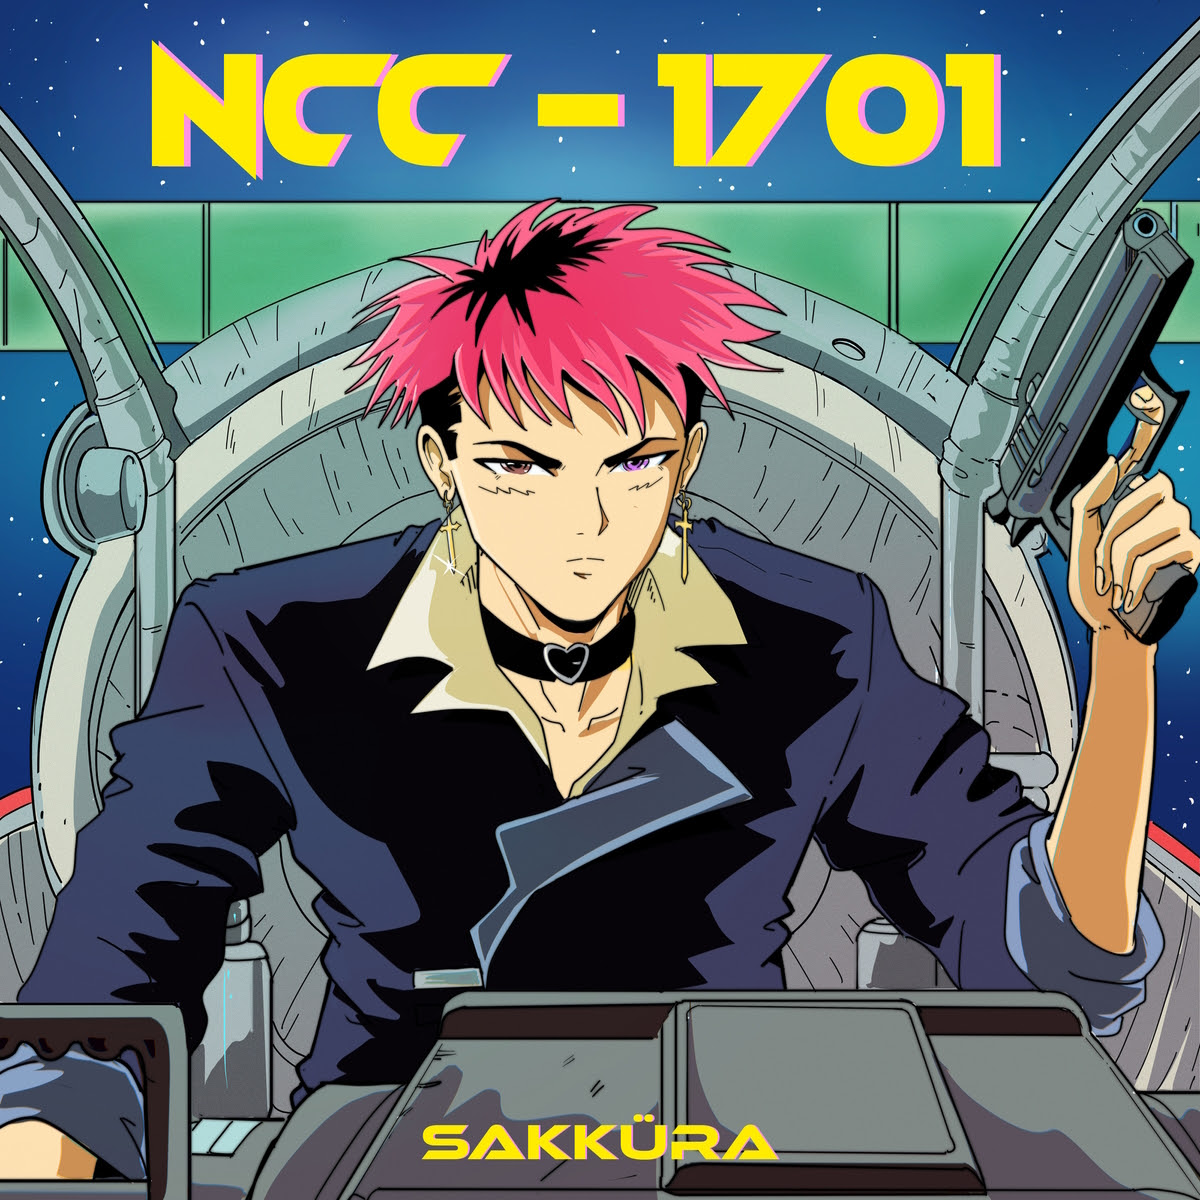 Sakküra venerdì 31 marzo esce in radio “NCC-1701” il nuovo singolo